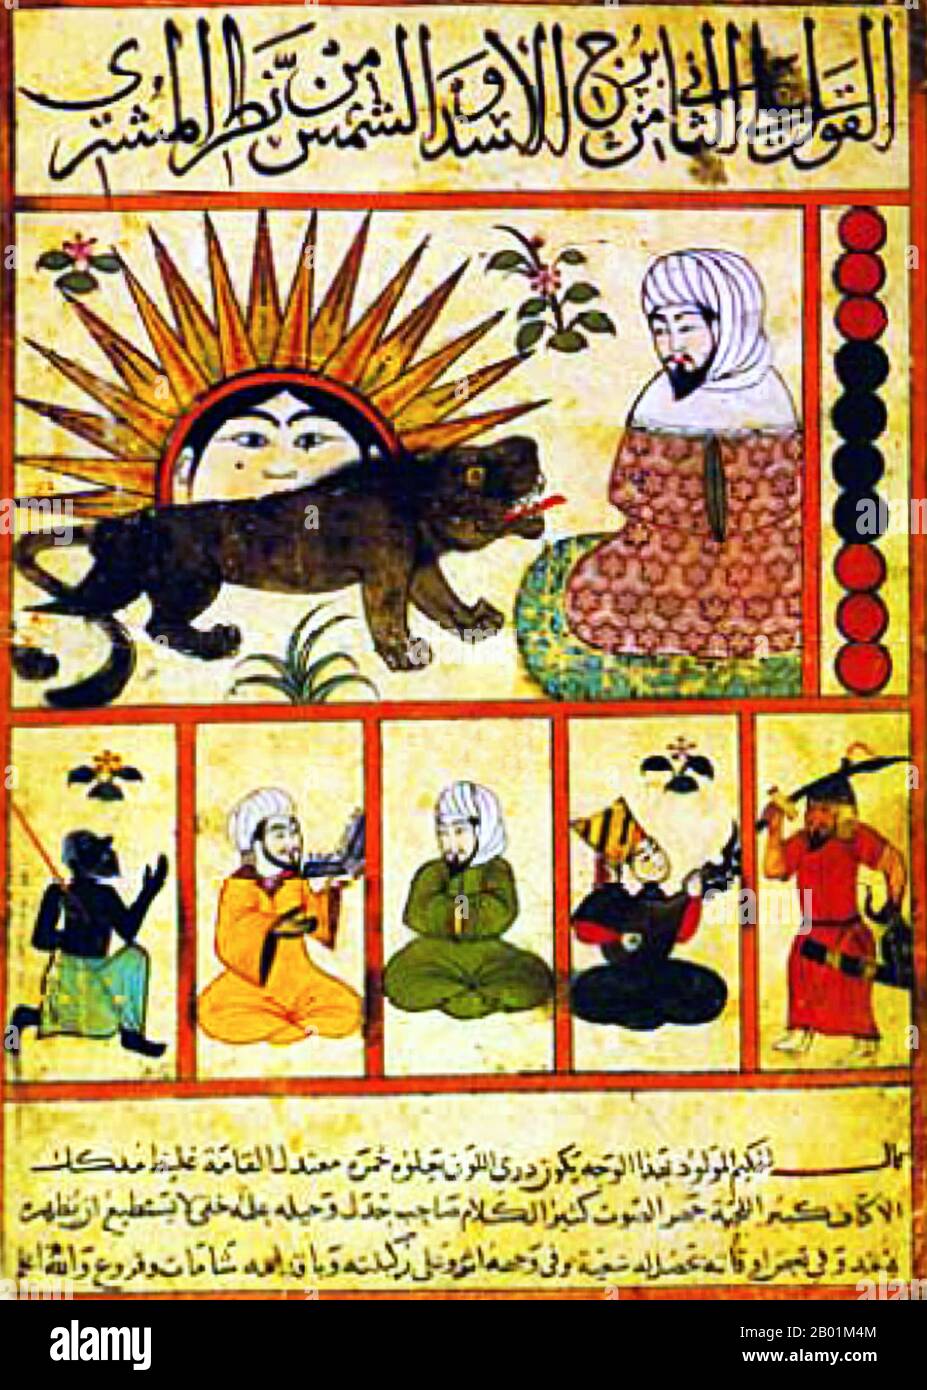 Ägypten: Sonnen- und Löwensymbole aus einer ägyptischen Reproduktion der astrologischen Abhandlung Kitab al-Mawalid (das Buch der Heiligtümer) von Abu Ma'shar Ibn Balkhi (10. August 787 - 9. März 886), 15. Jahrhundert. Abū Ma'shar, Ja'FAR ibn Muḥammad al-Falakī (auch al-Balkhī oder Ibn Balkhī, latinisiert als Albumasar, Albusar oder Albuxar) war ein persischer Astrologe, Astronom und islamischer Philosoph, der als der größte Astrologe des abbasidischen Hofes in Bagdad gilt. Er war kein bedeutender Innovator und seine Werke sind praktische Bücher für die Ausbildung von Astrologen. Stockfoto